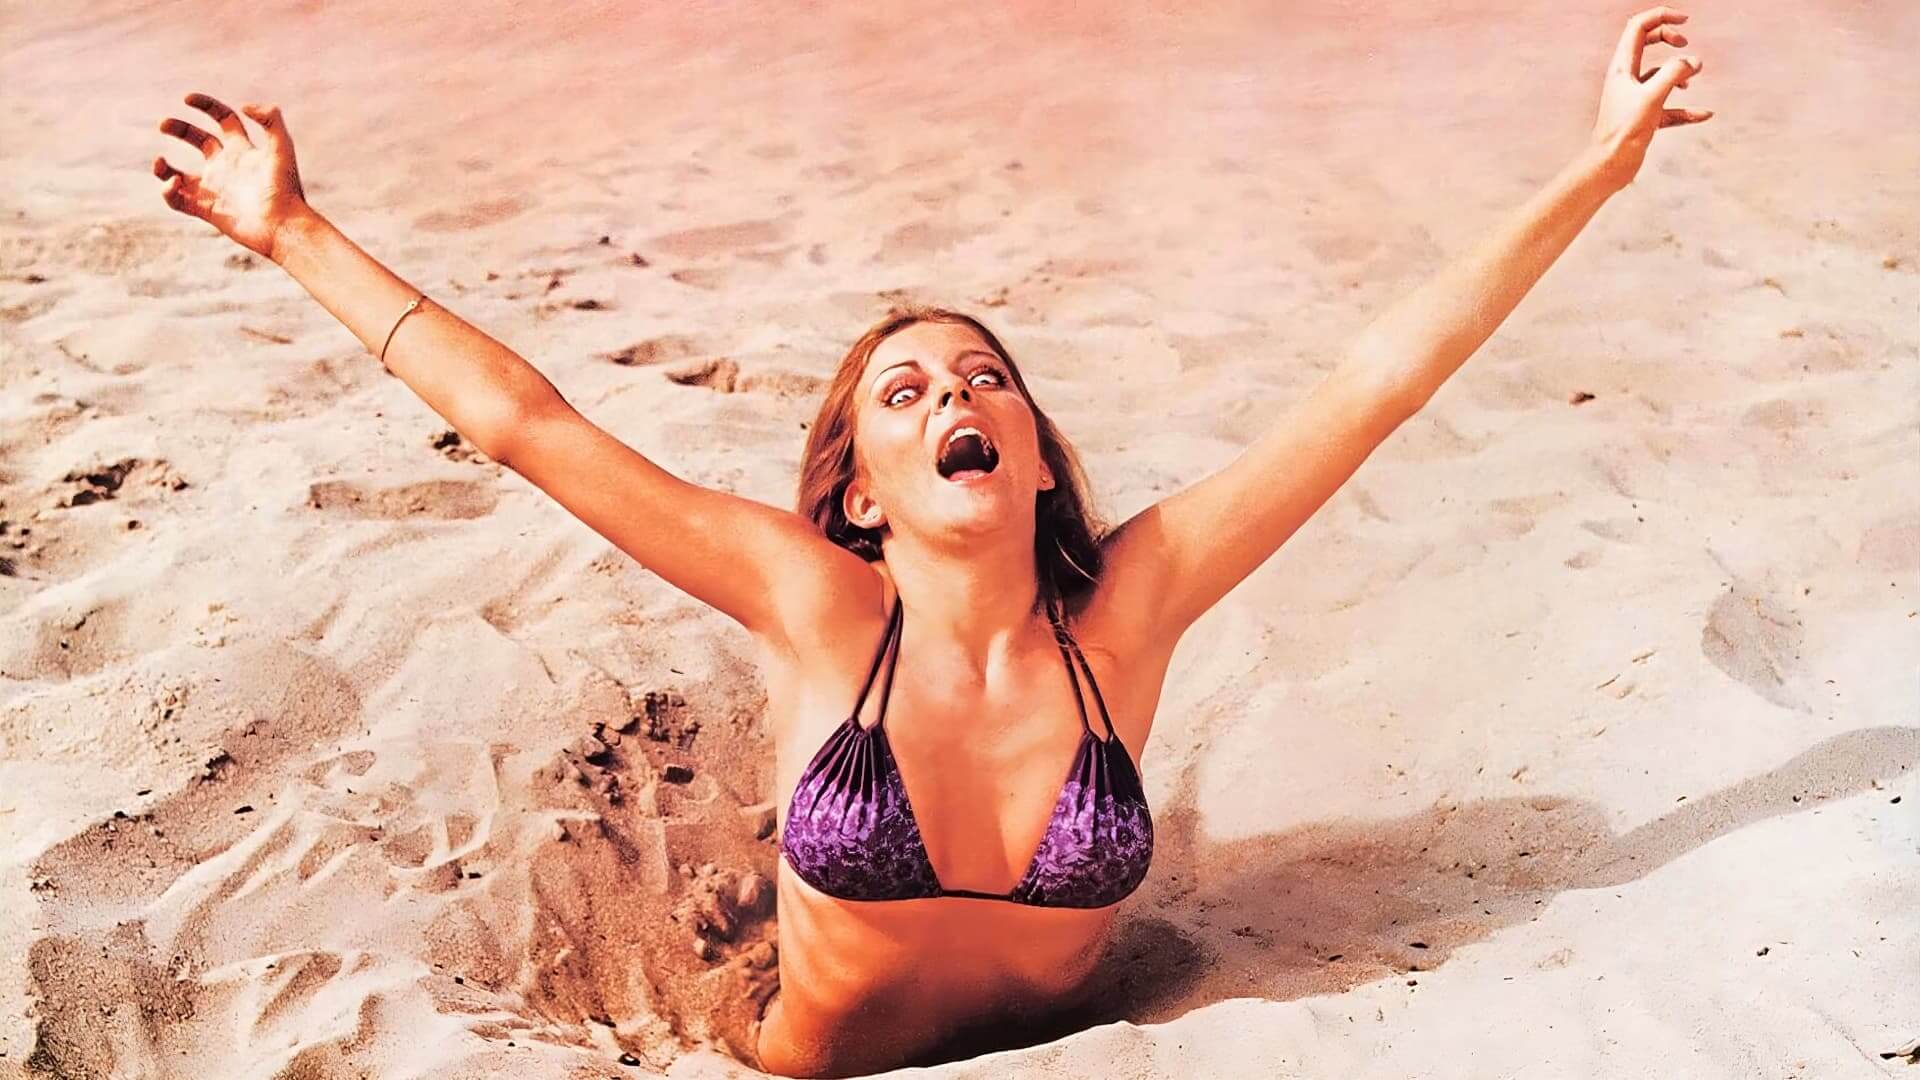 blood beach horror movies 1981